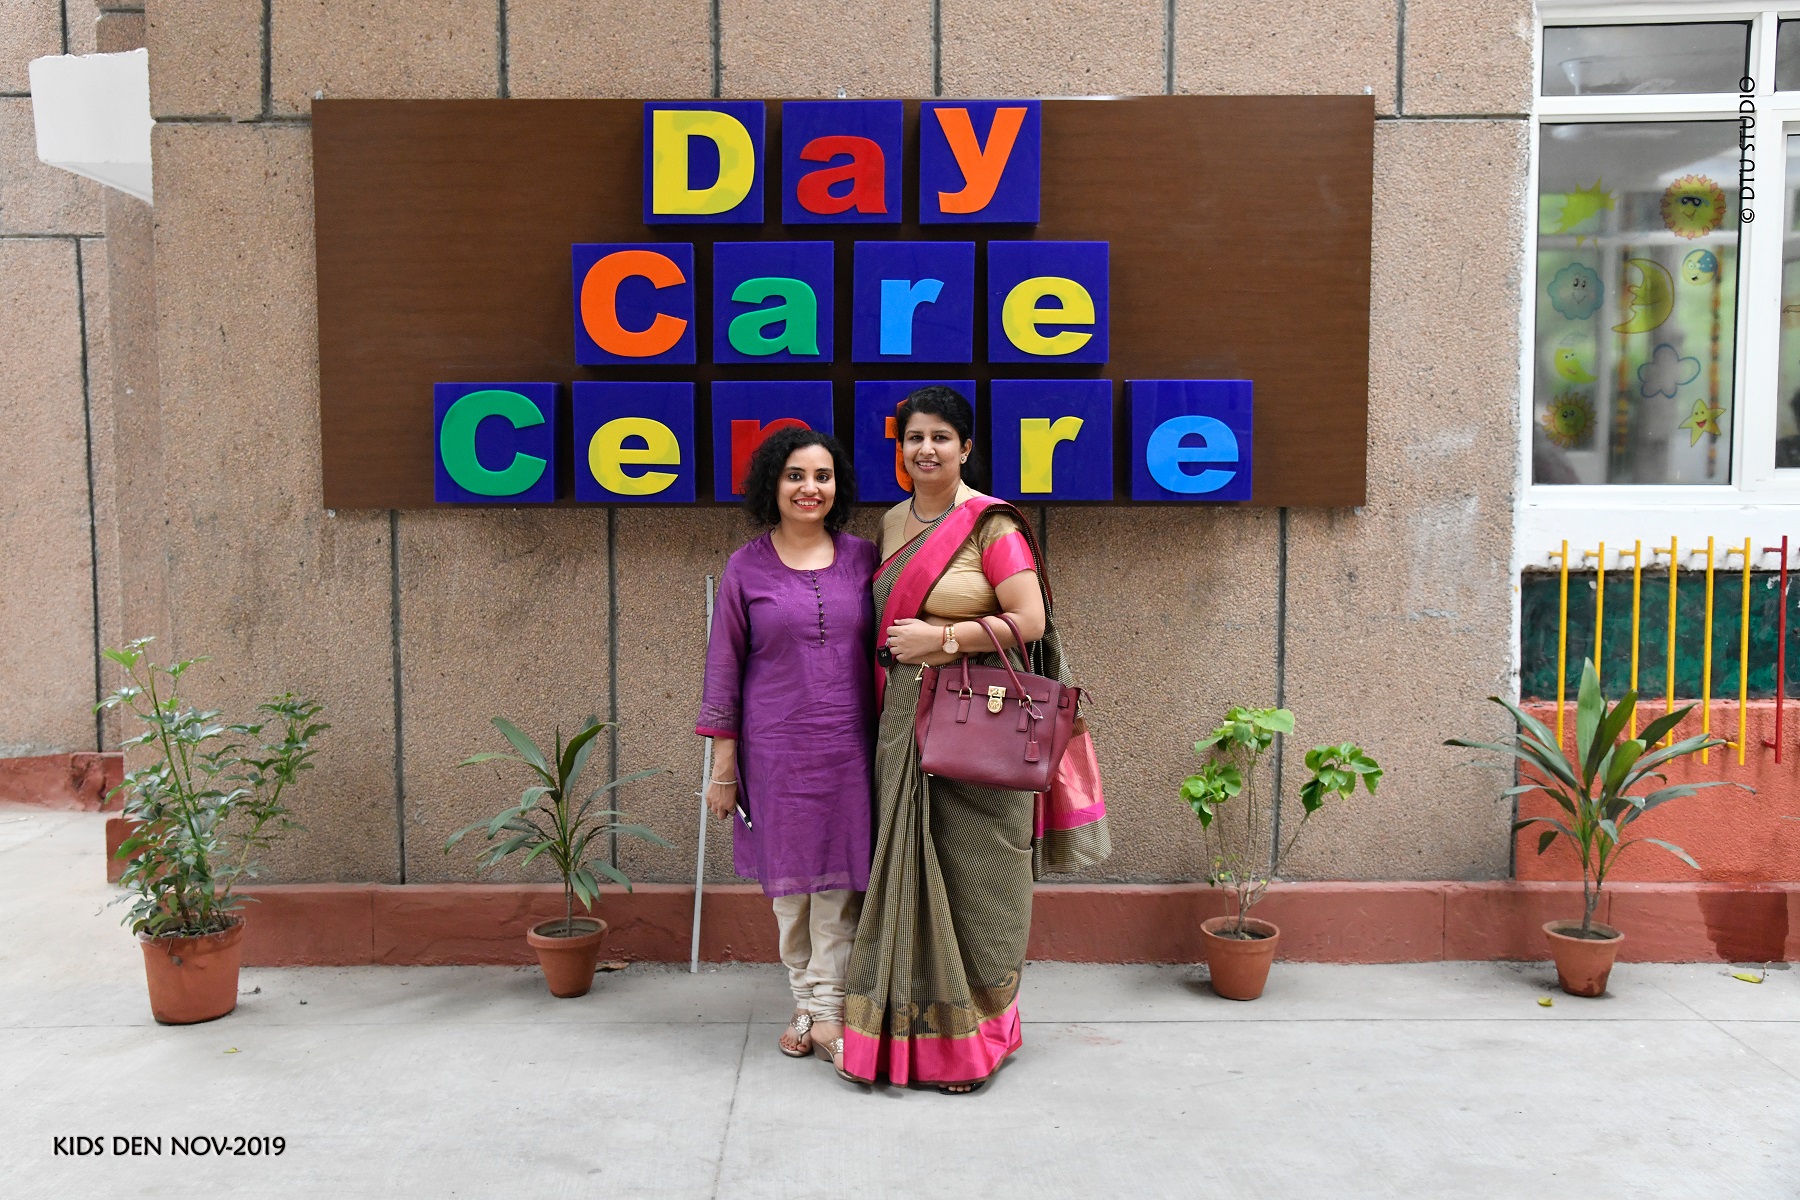 Kids Den DTU 'A Day Care Centre' 